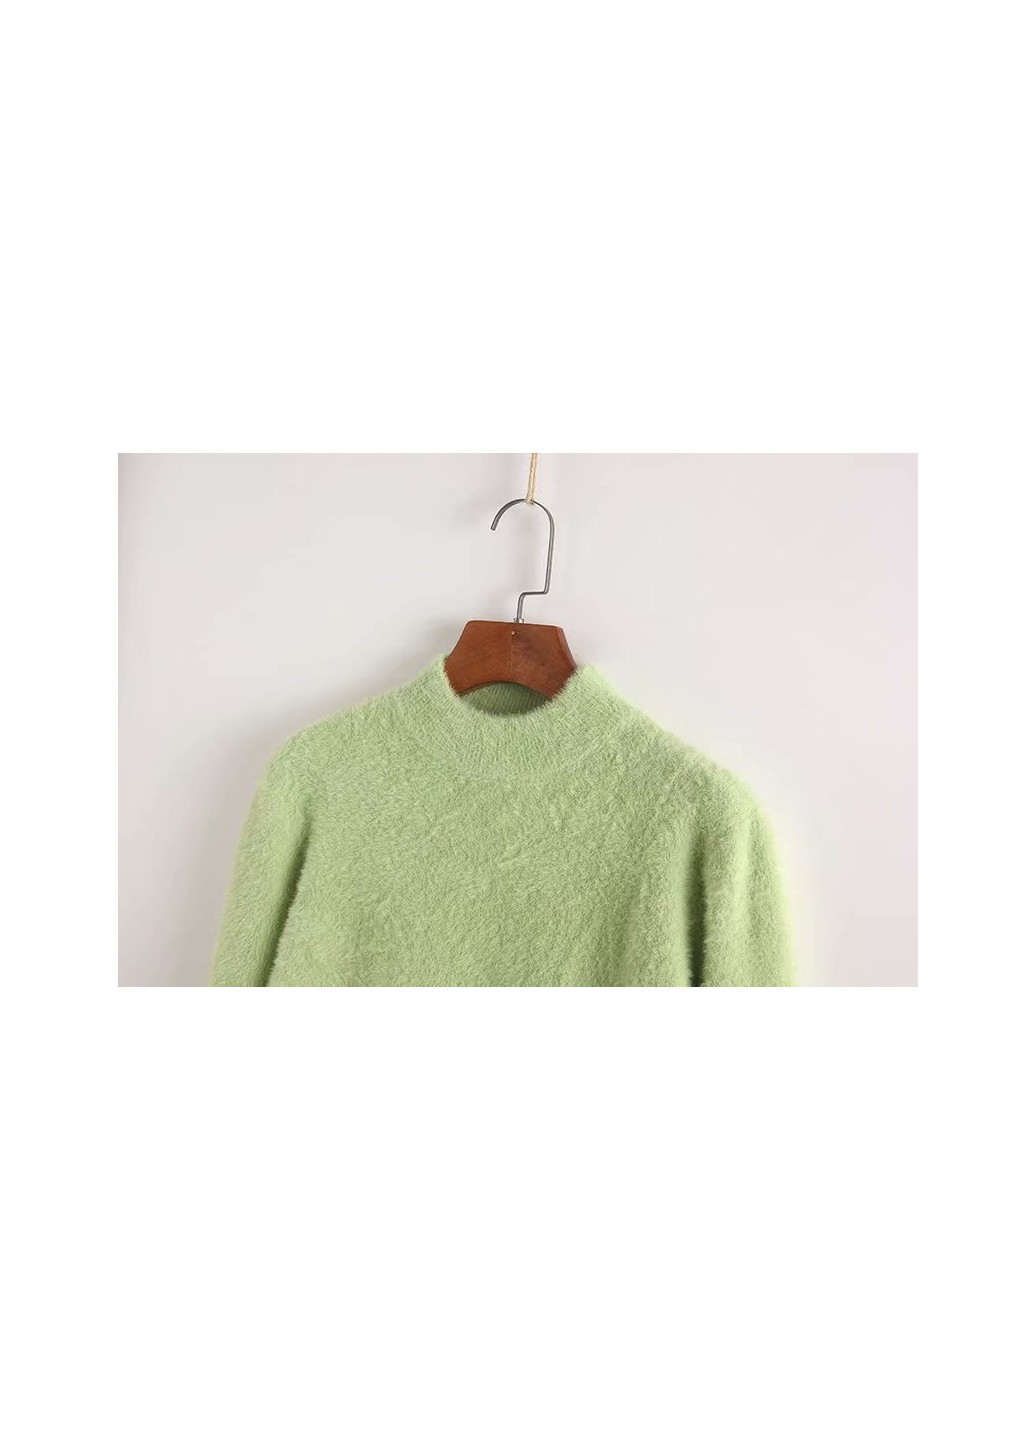 Зеленый демисезонный свитер женский пушистый fluff Berni Fashion 55368